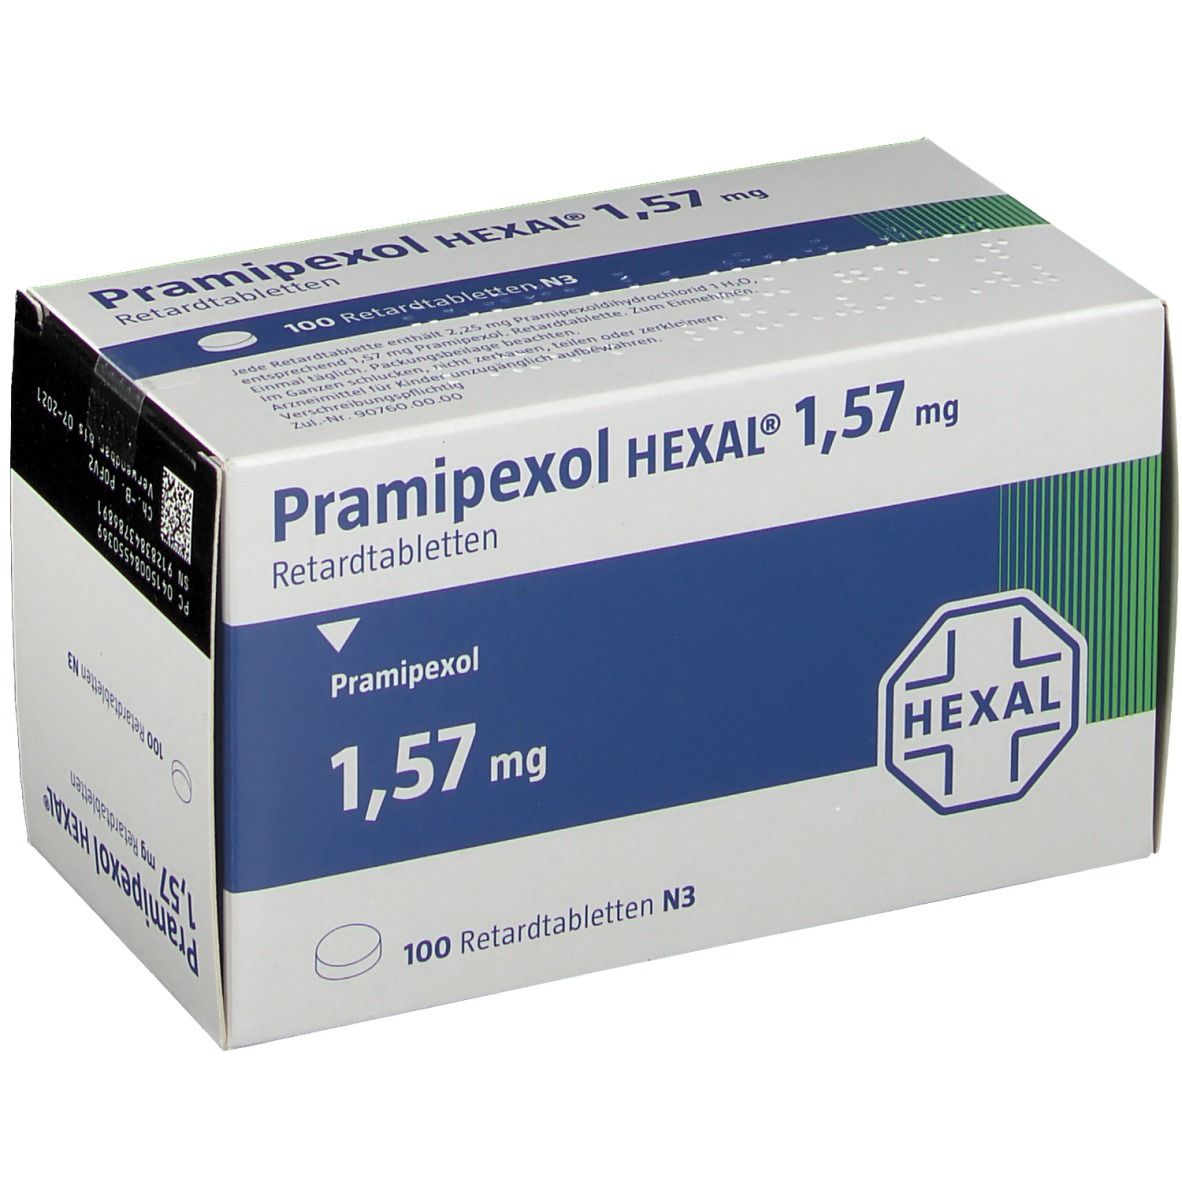 Pramipexol HEXAL® 1,57 mg